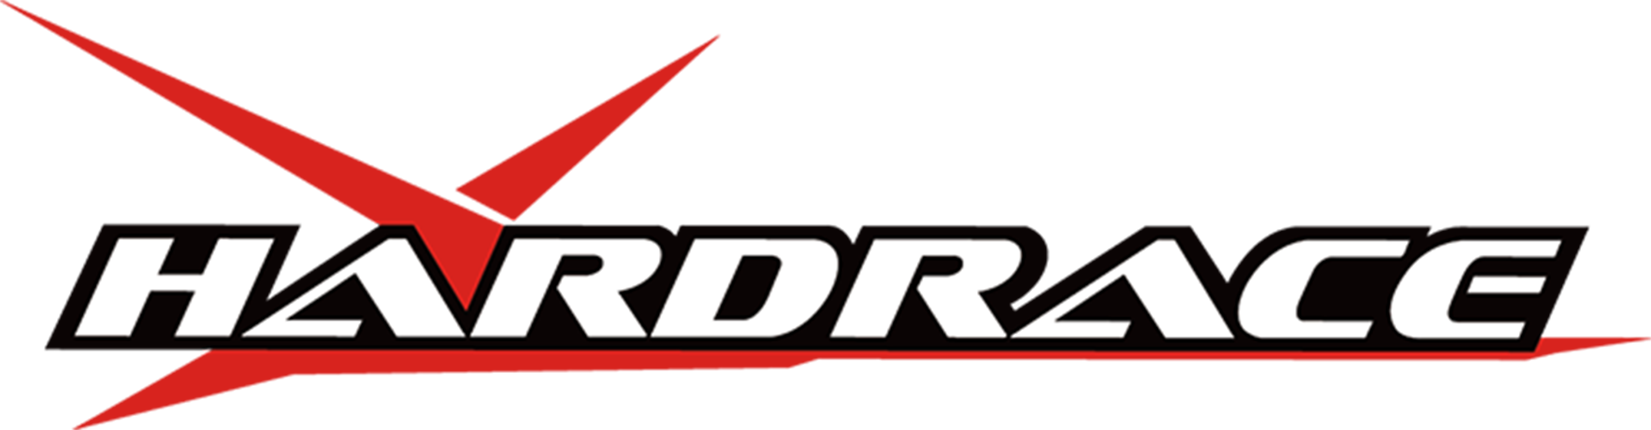 HARDRACE logo – BMS Motorsports